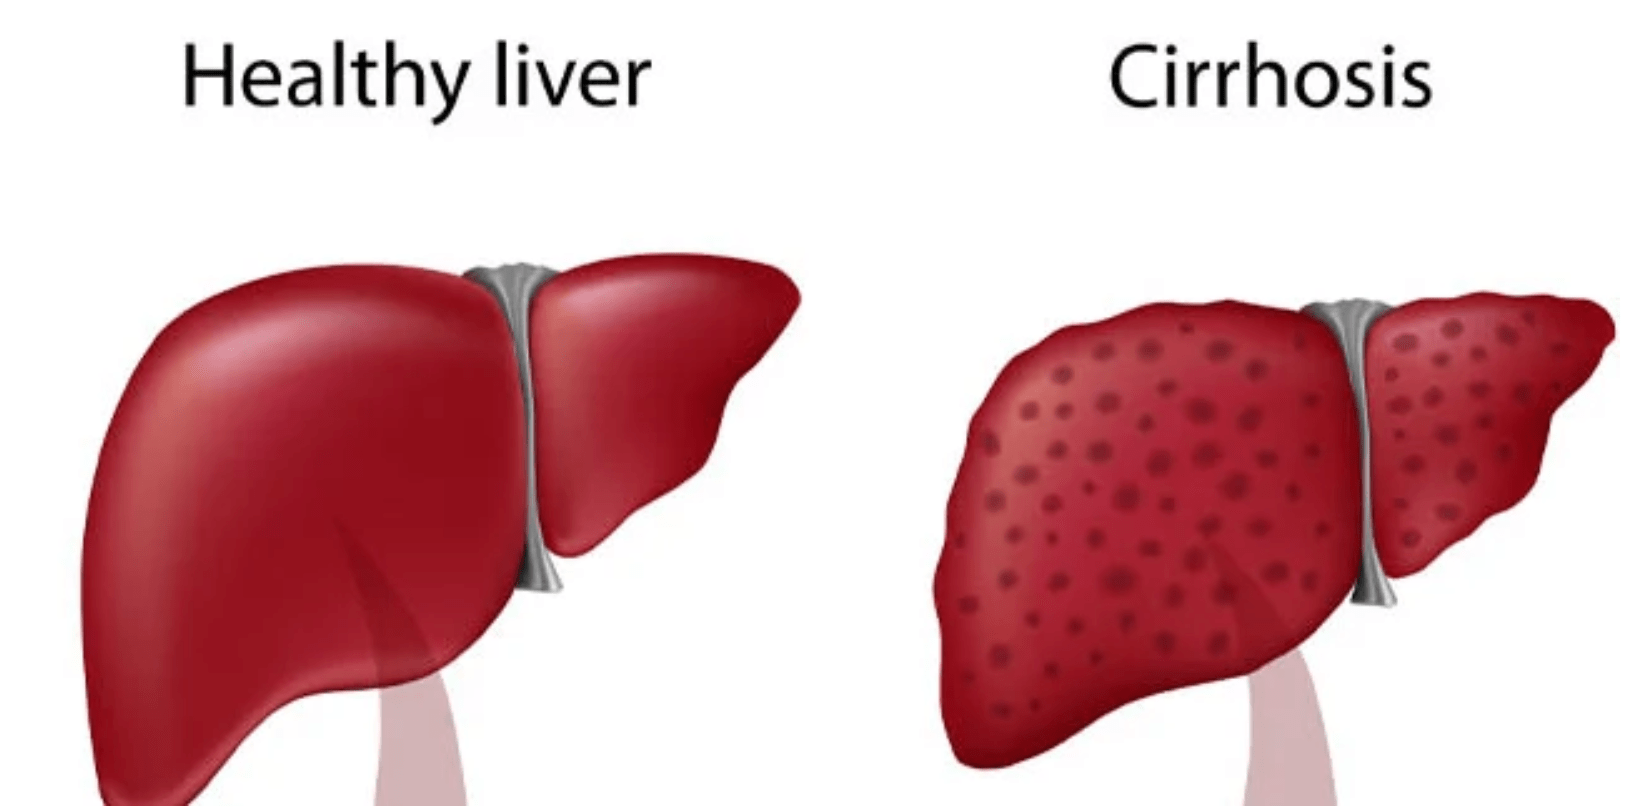 Quins factors provoquen la cirrosi hepàtica?